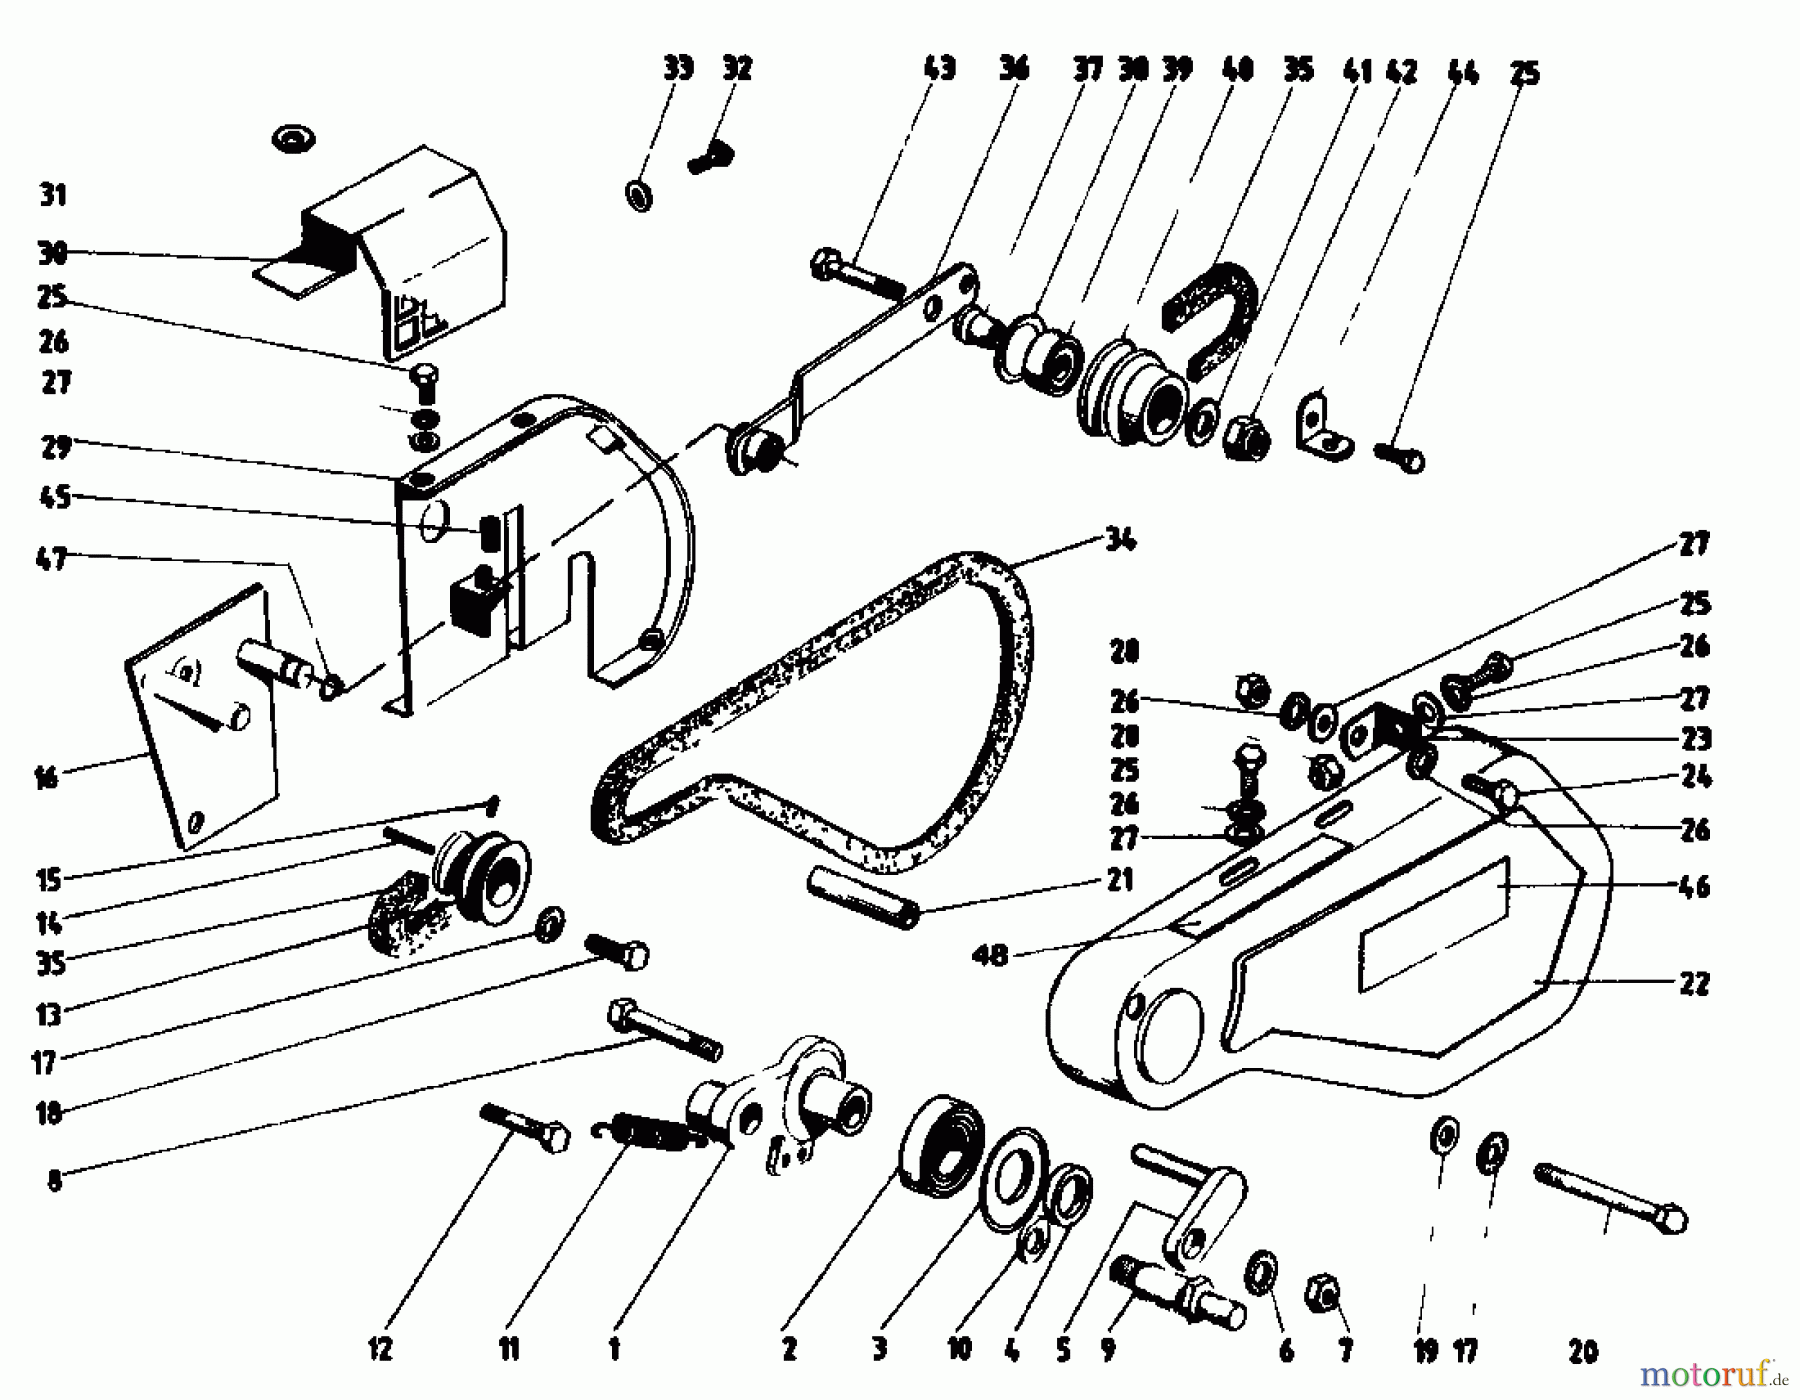  Gutbrod Tillers MB 60-52 07512.09  (1986) Drive system